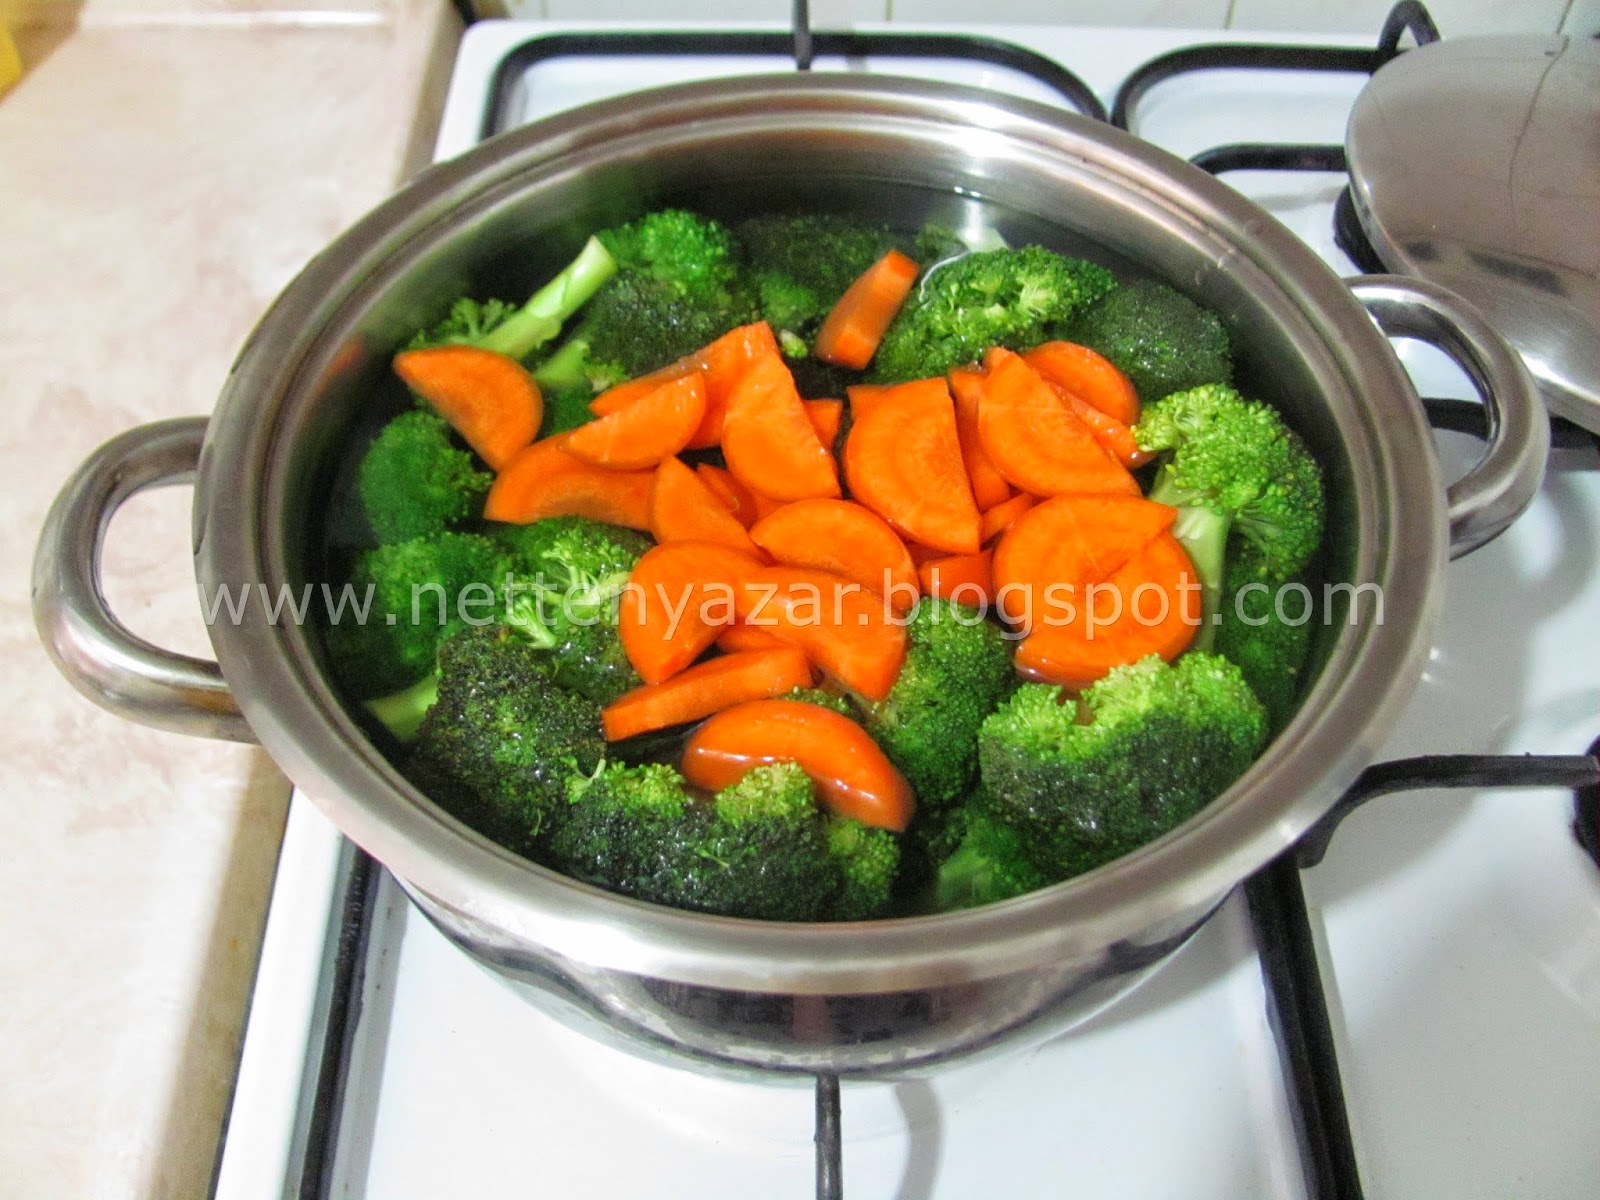 Brokoli Salatası - Broccoli Salad - 03